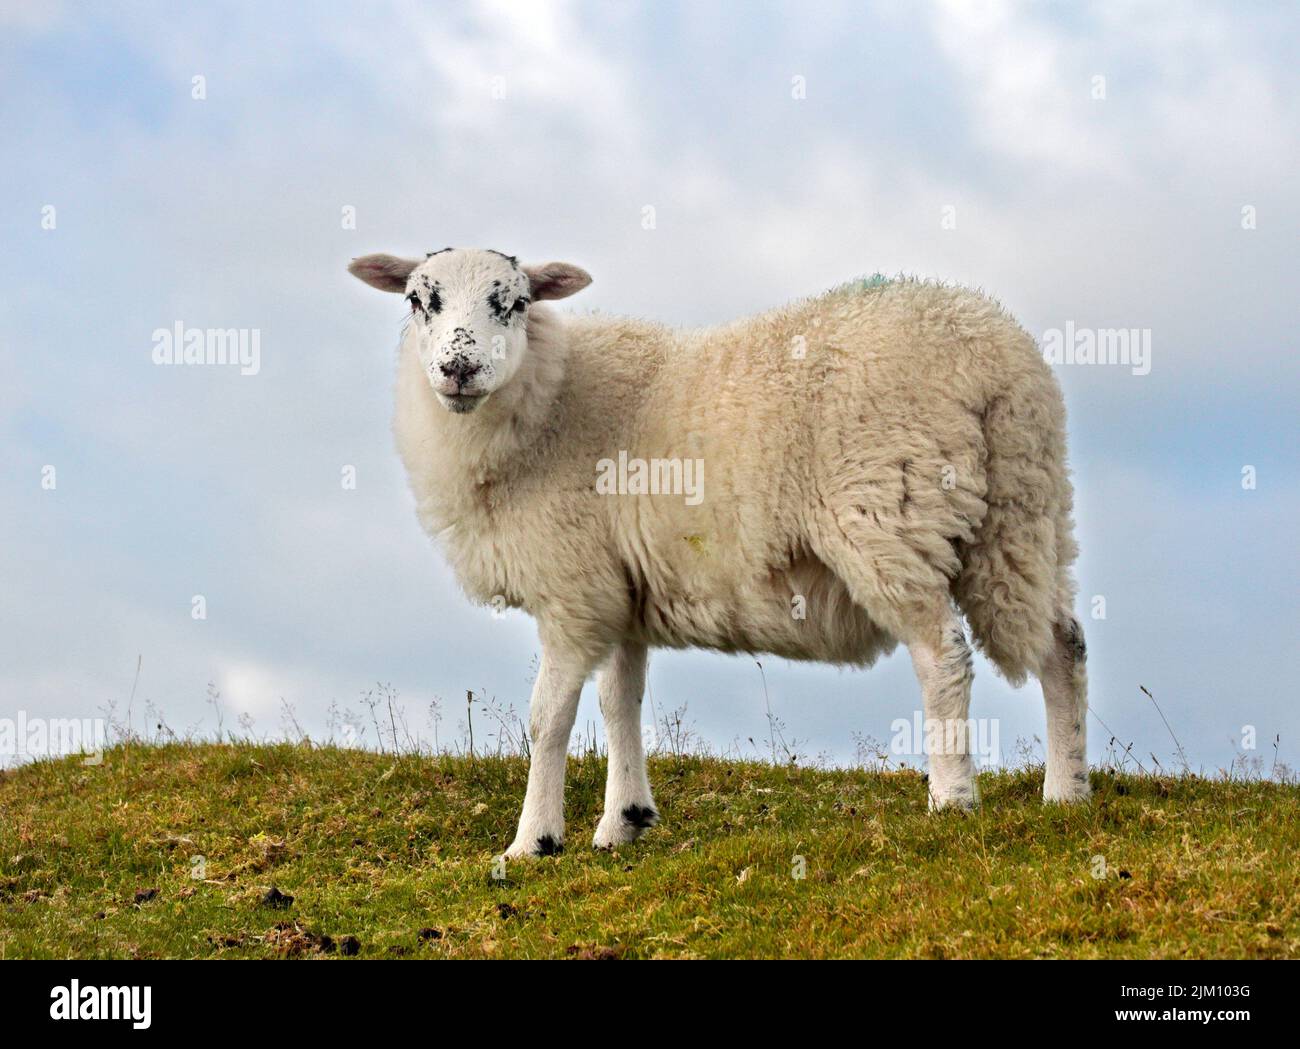 White Sheep, Minera Mountain, in der Nähe von Wrexham, Wales Stockfoto